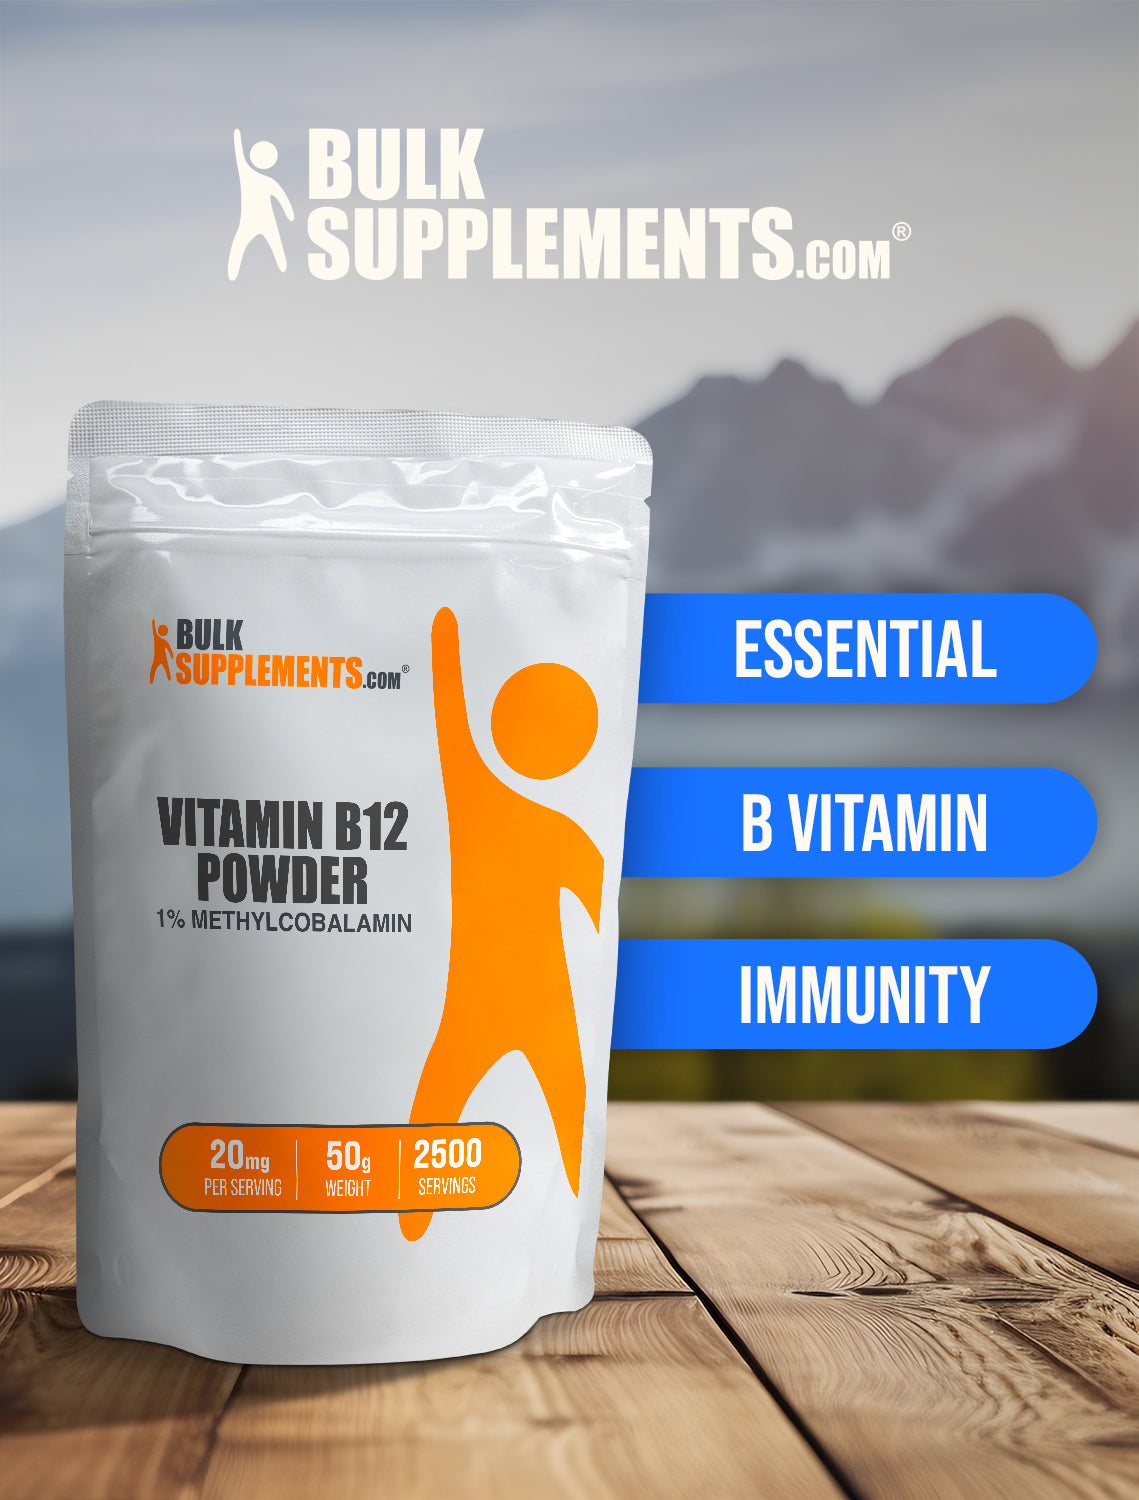 Vitamin B12 1% Methylcobalamin powder keyword image 50g